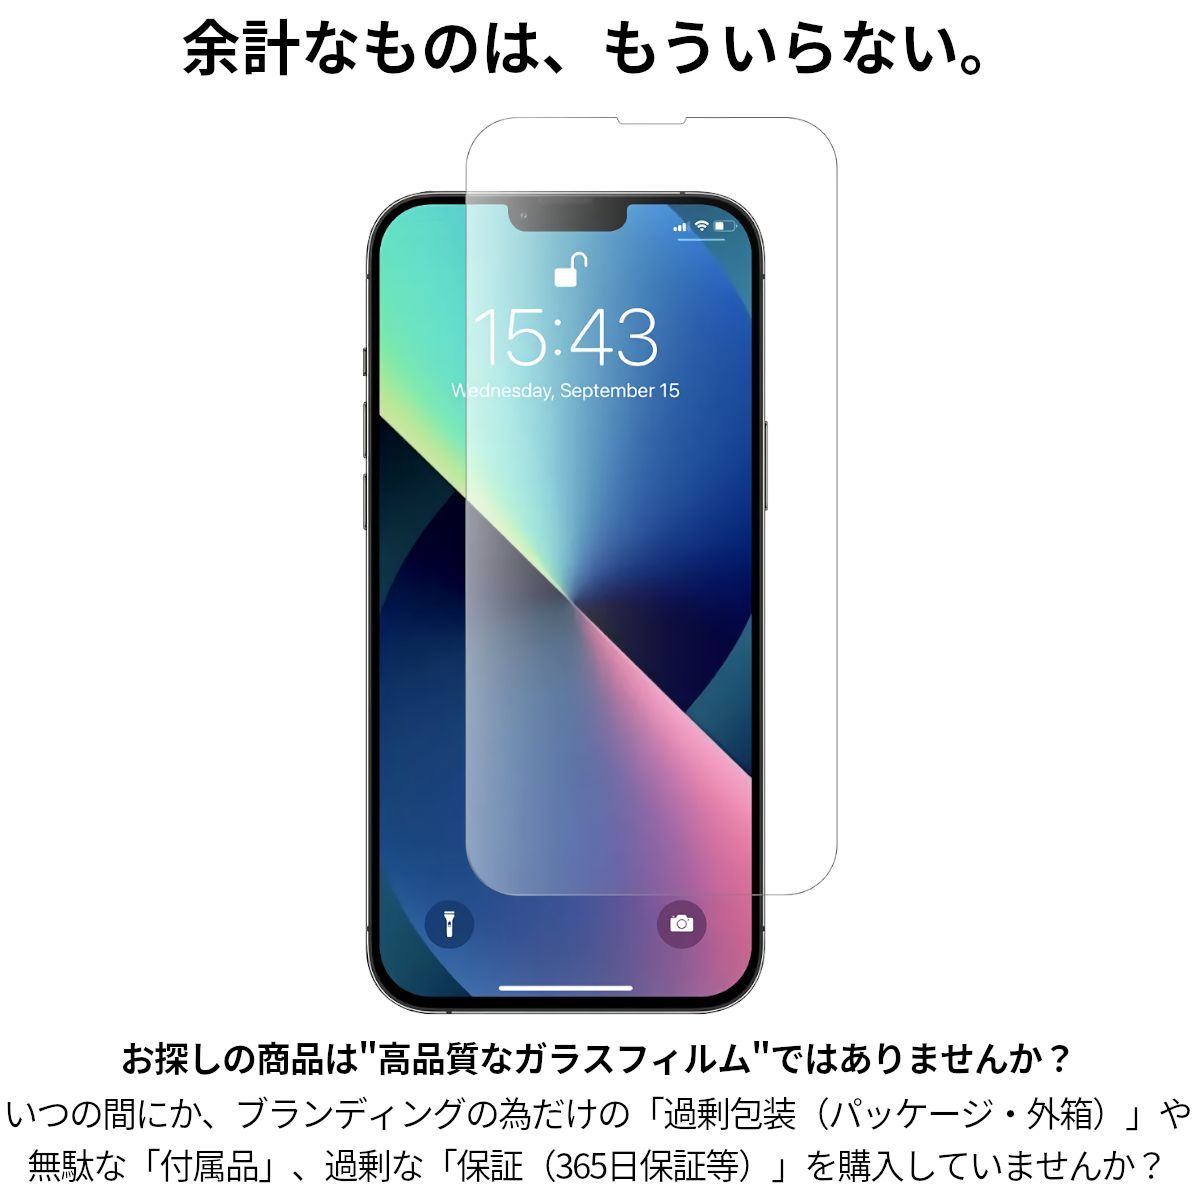 2枚 iPhoneX 旭硝子 超強化 ガラスフィルム iPhone X